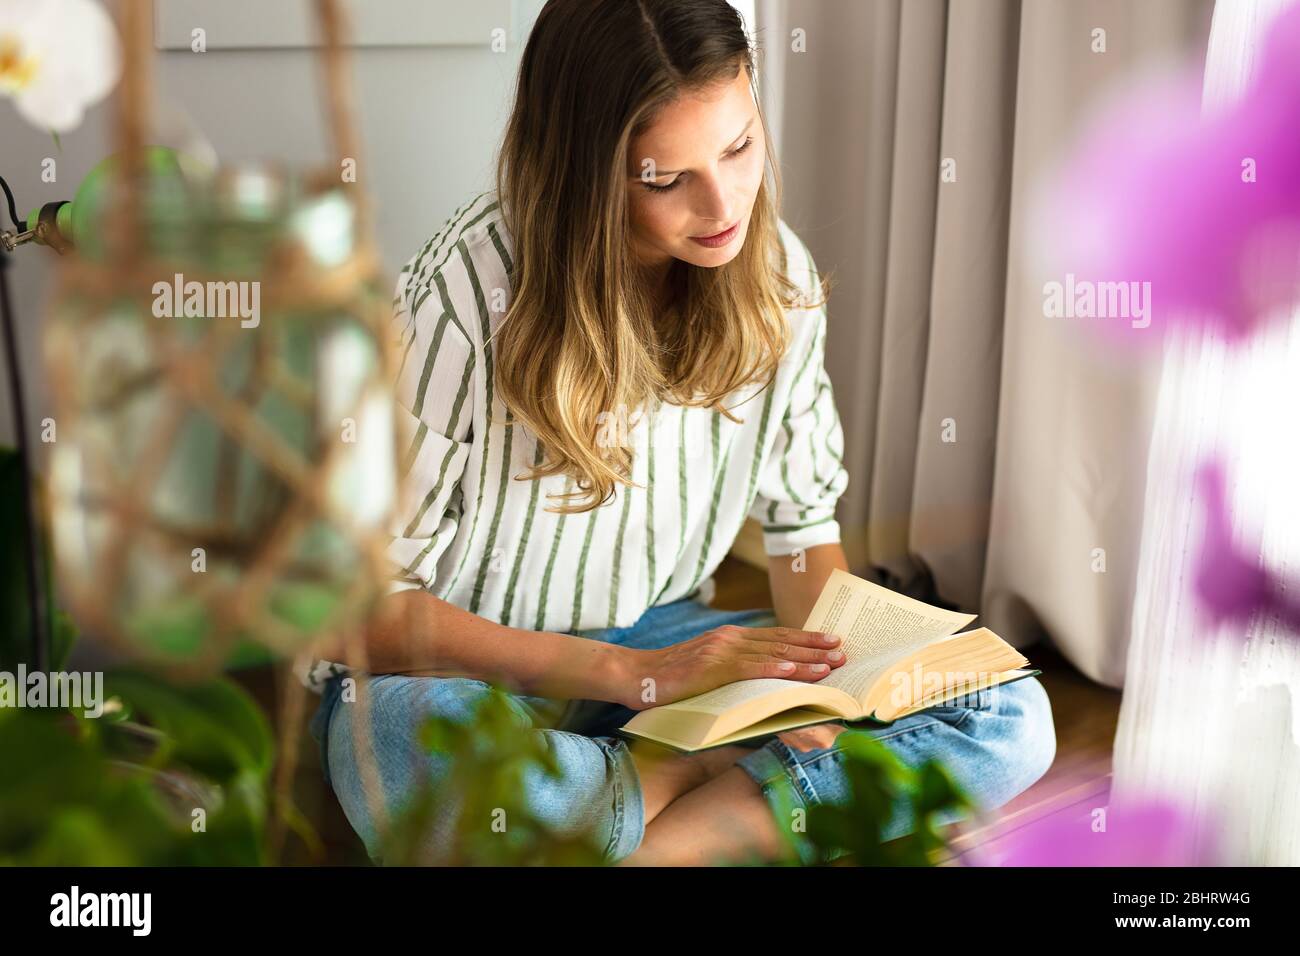 Frau liest neben einem hellen Fenster, entspannt und entspannt während der Ausbruchszeit. Home-Aktivität für einen gesunden Geist Stockfoto